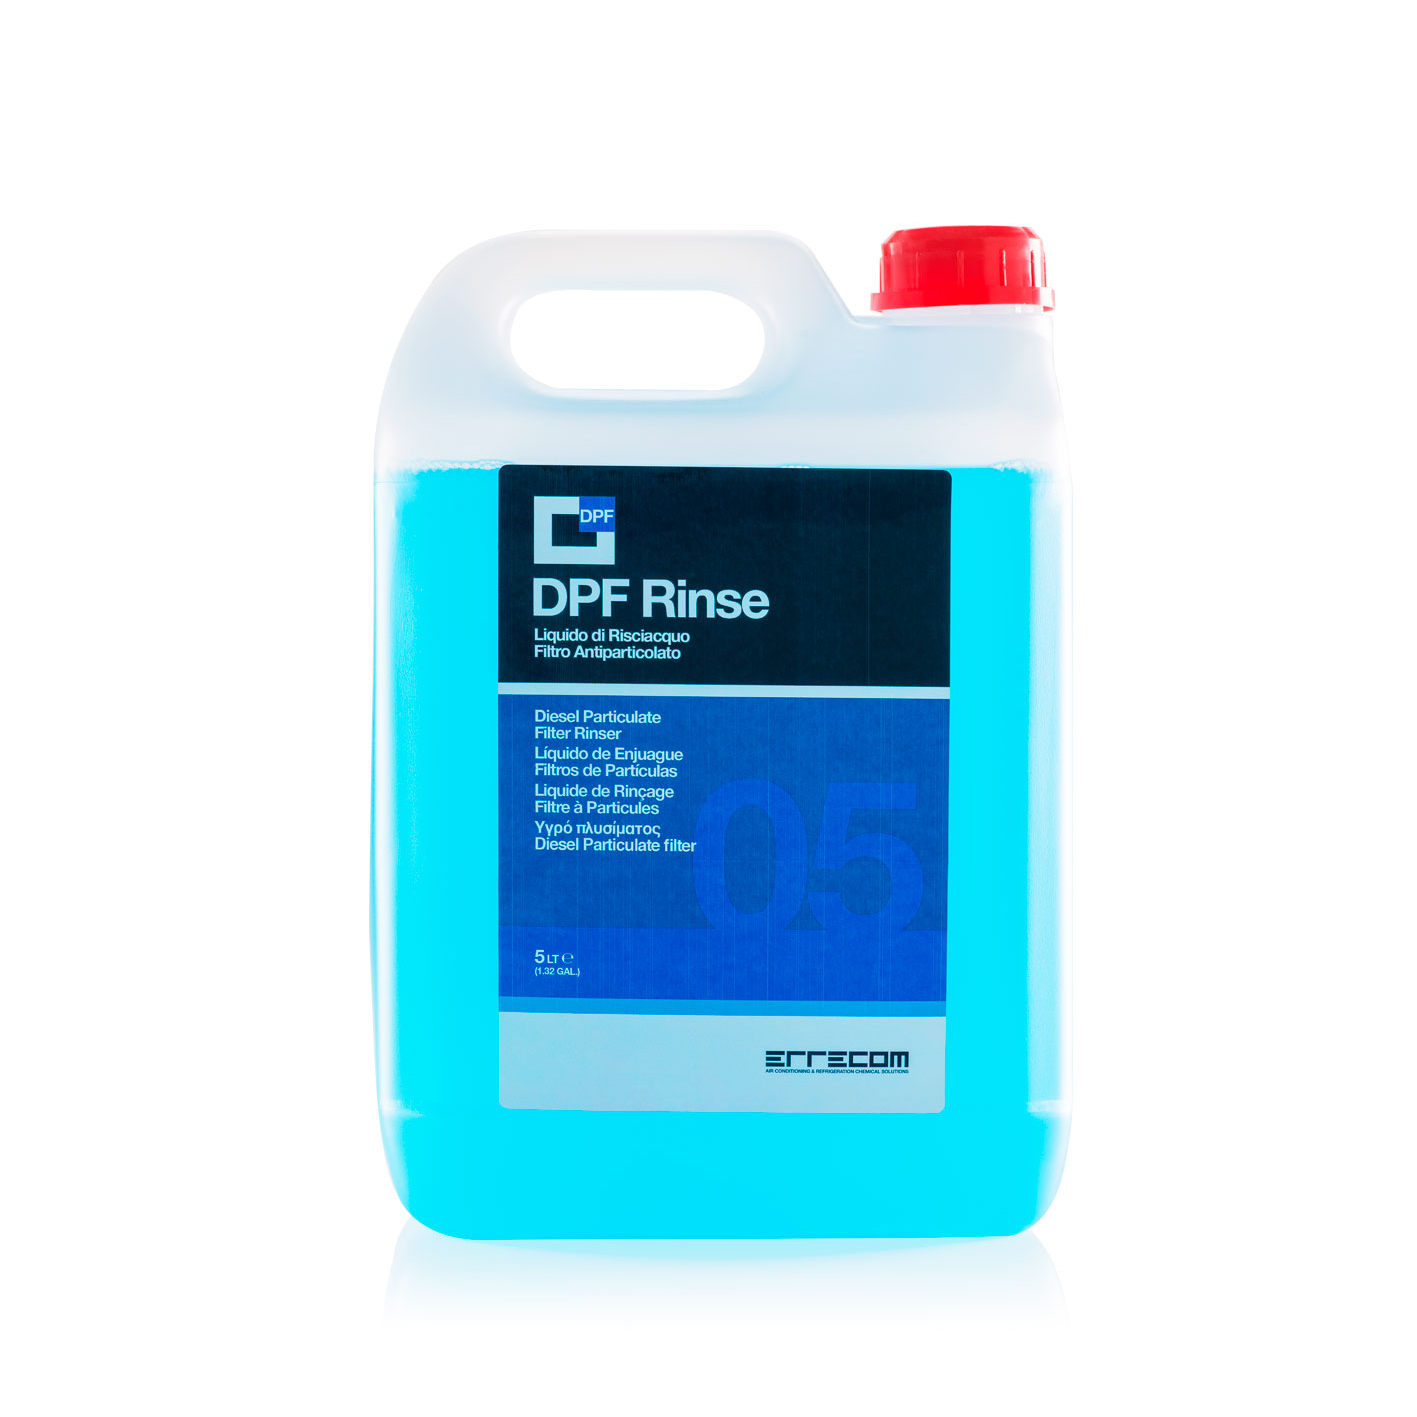 2 x DPF RINSE Liquido per il Risciacquo dei Filtri Antiparticolato Diesel - 5 litri - Confezione n° 2 pezzi